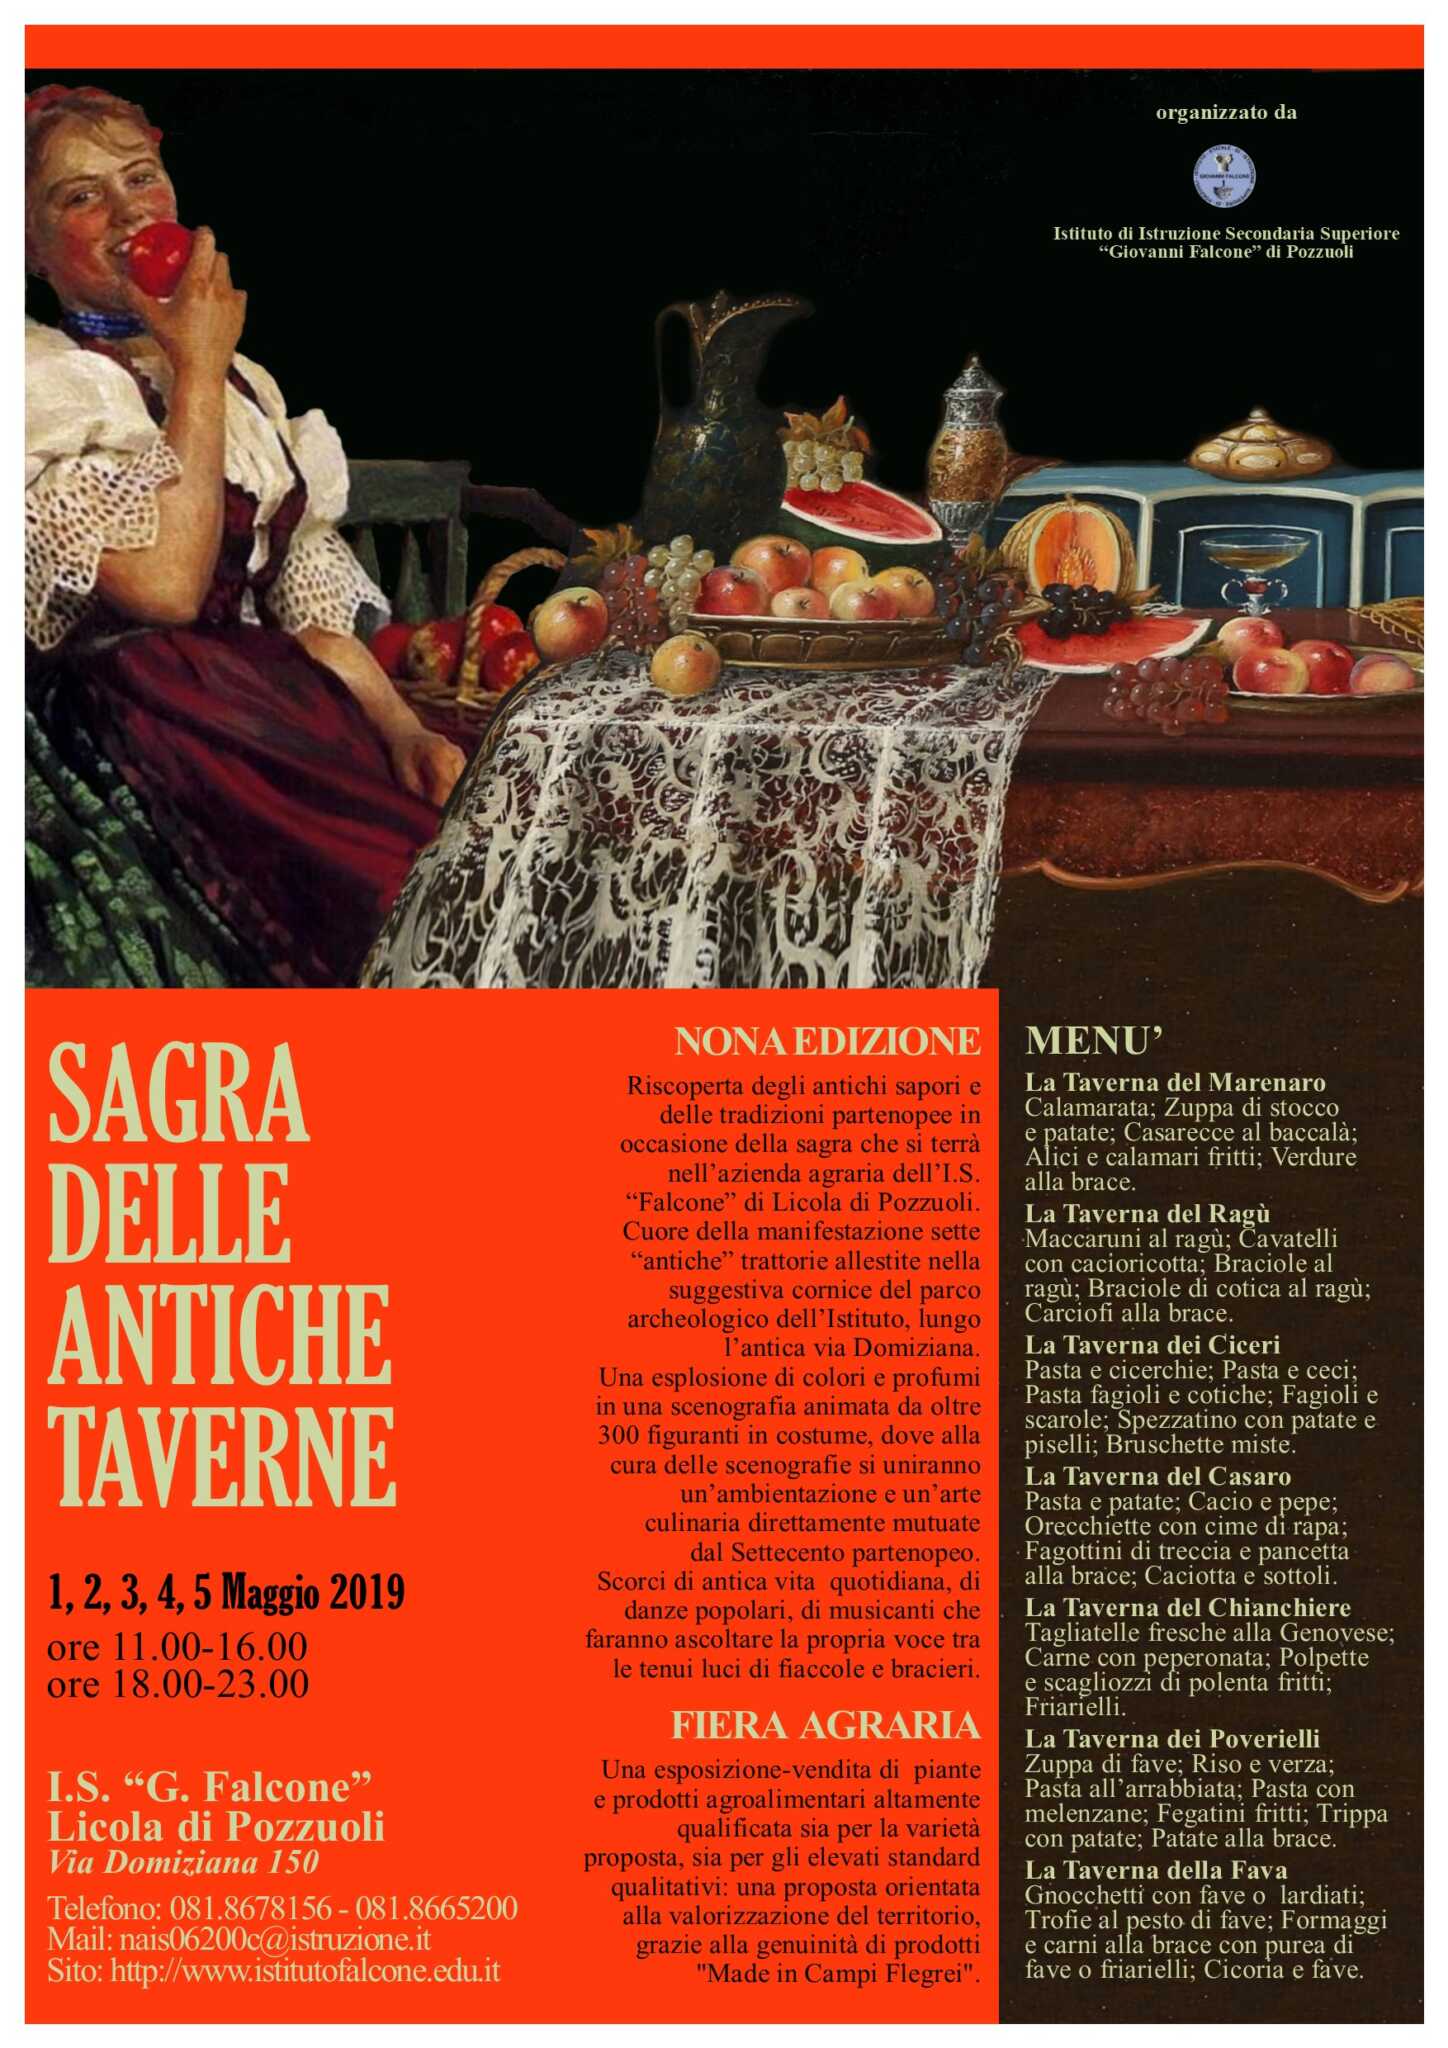 La Sagra delle Antiche Taverne alla nona edizione. Dall’1 al 5 maggio a Licola di Pozzuoli